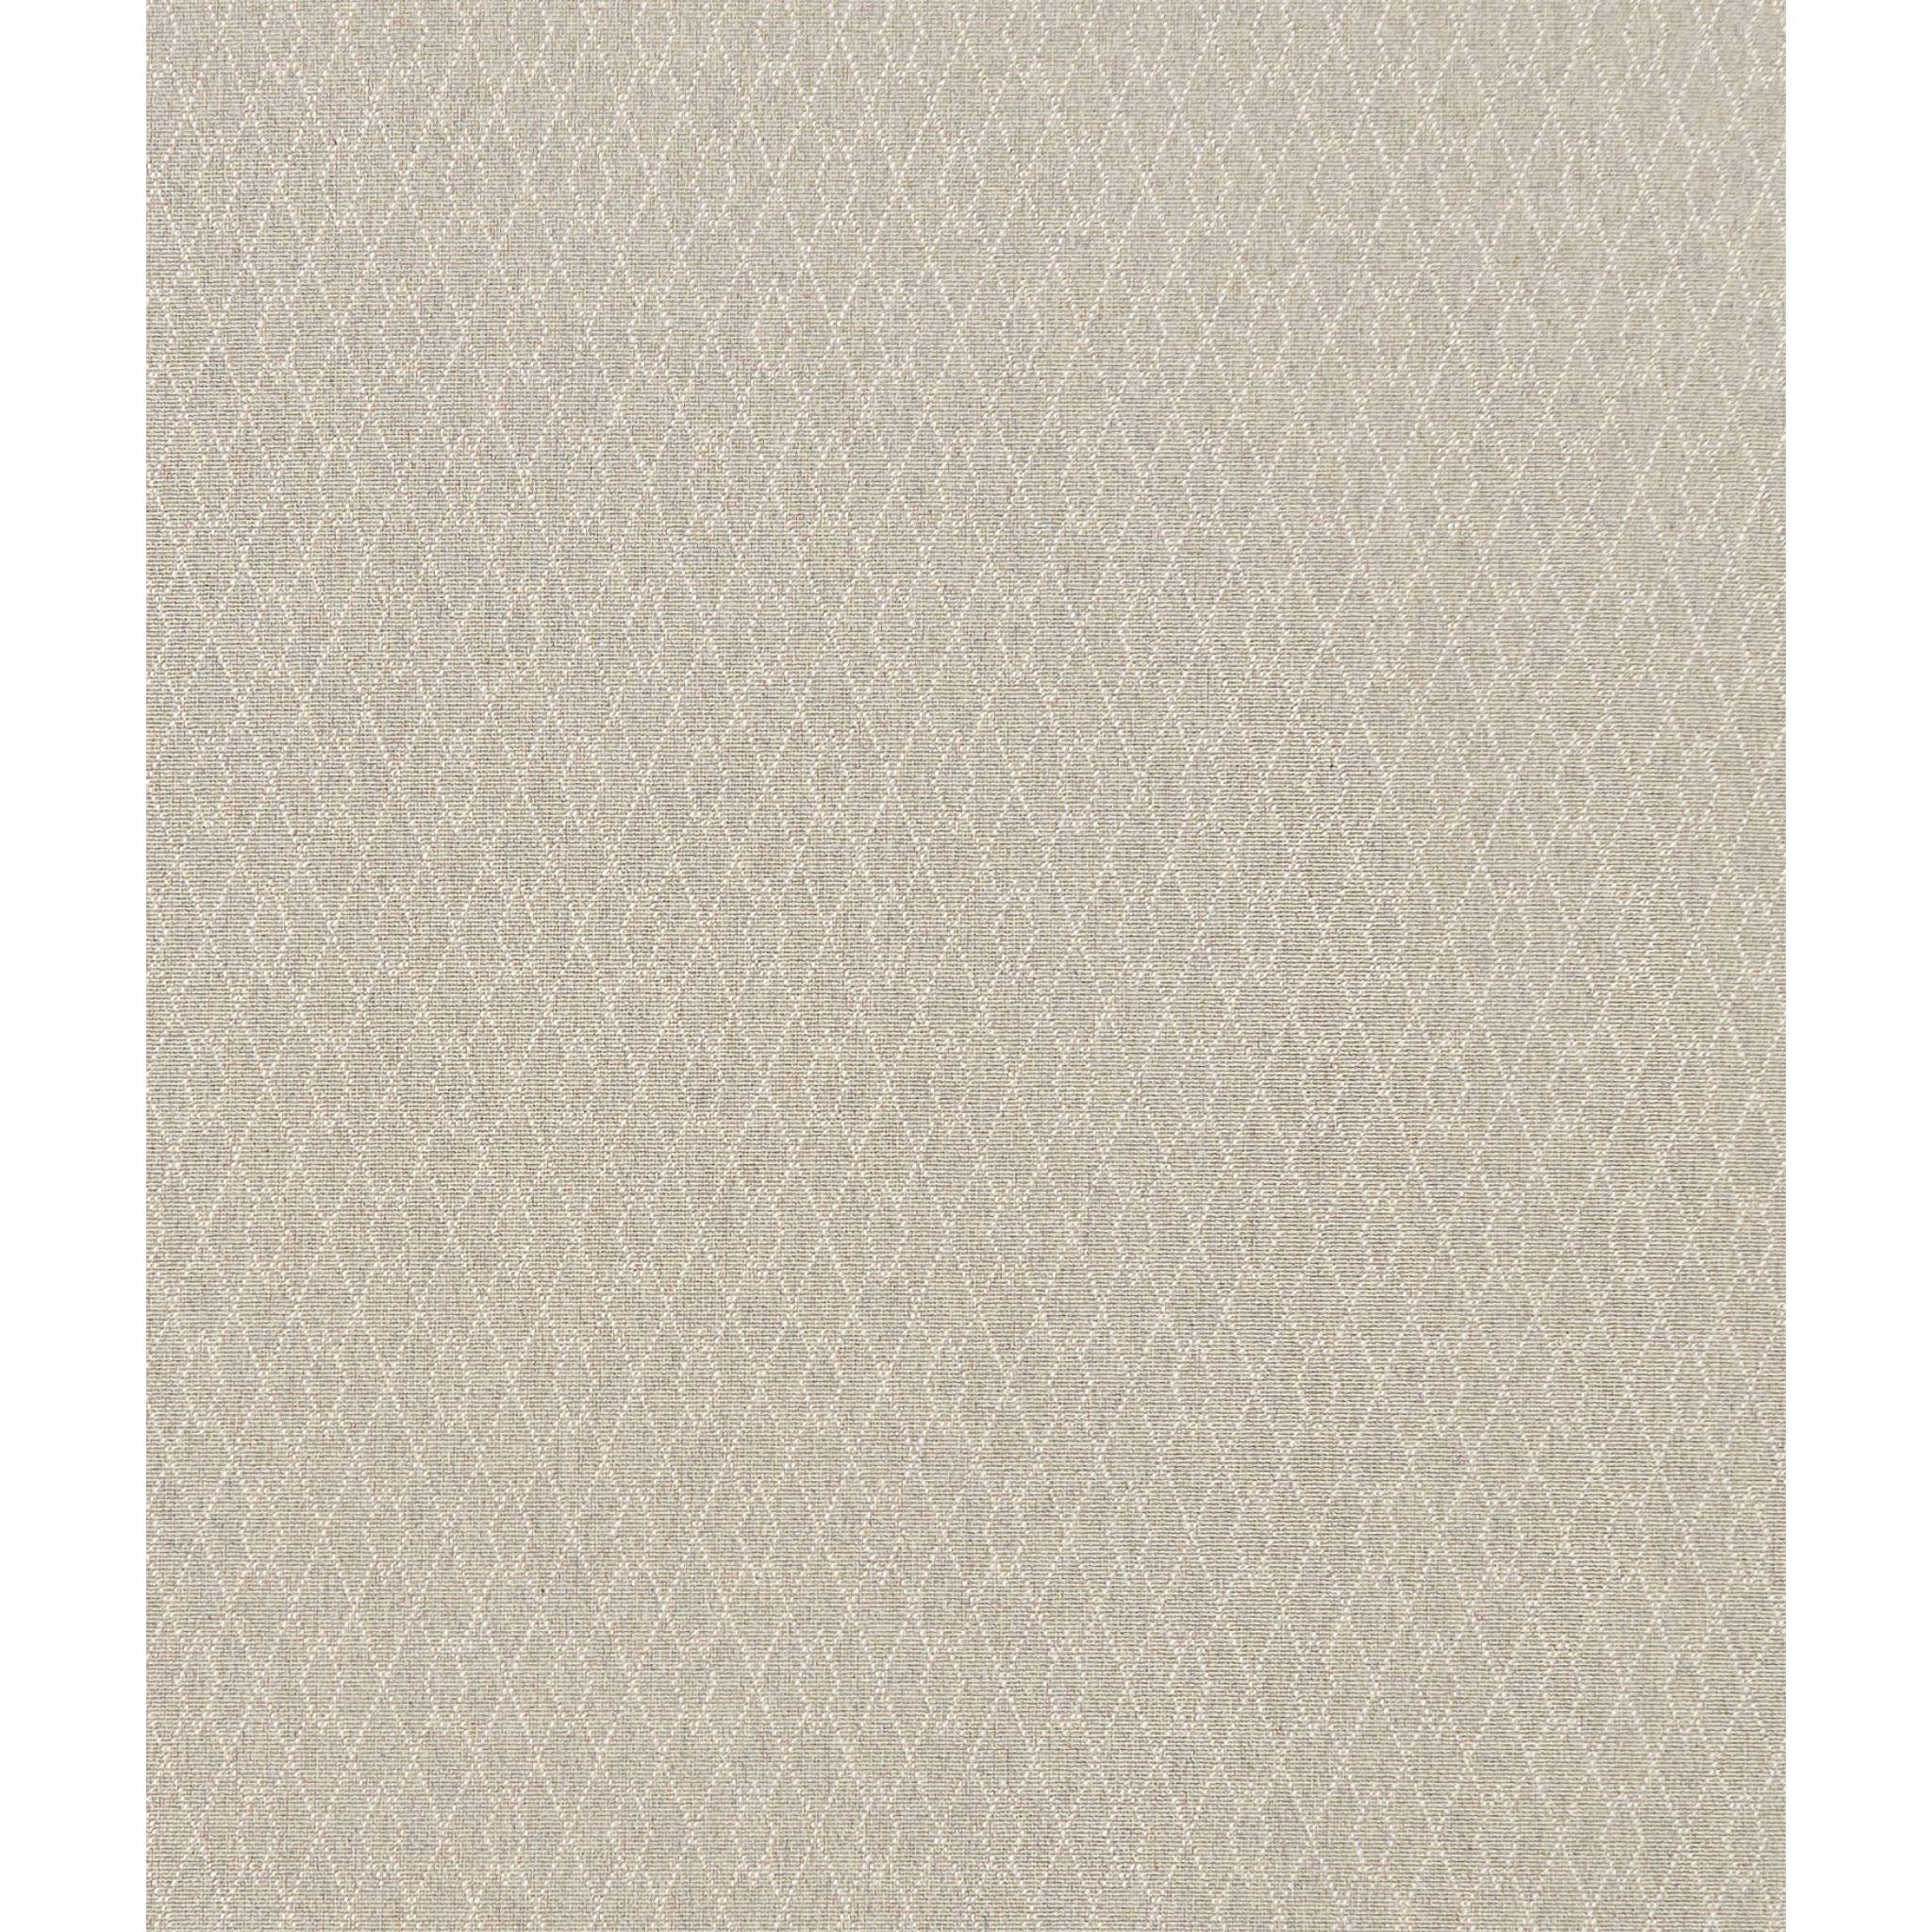 Sheldrake Wilton Carpet, Zinc Default Title